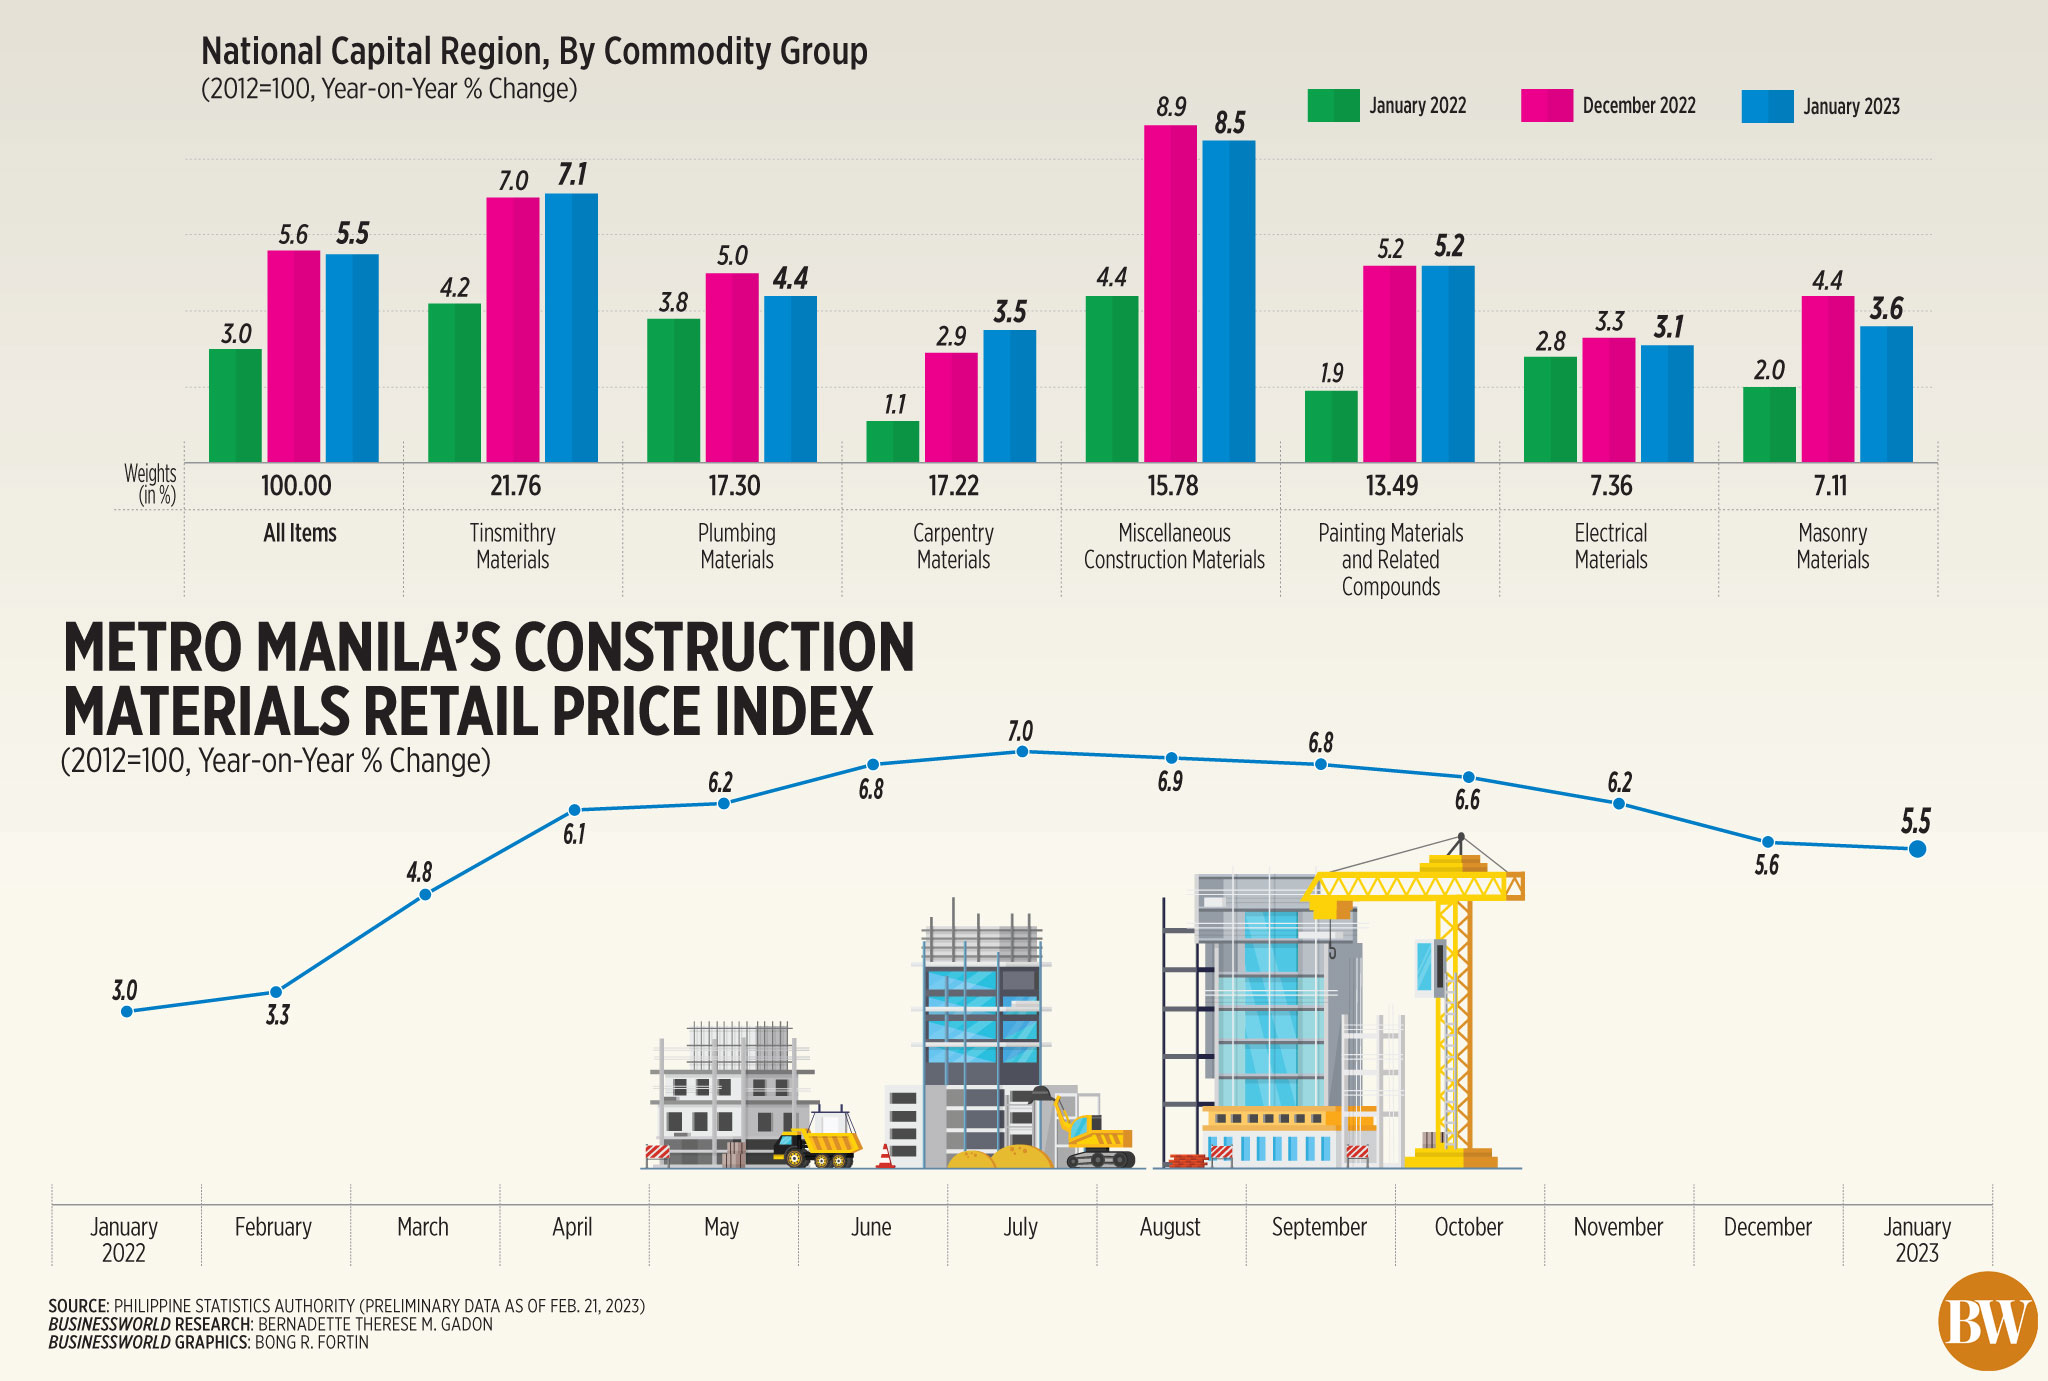 Metro Manila's construction materials retail price index